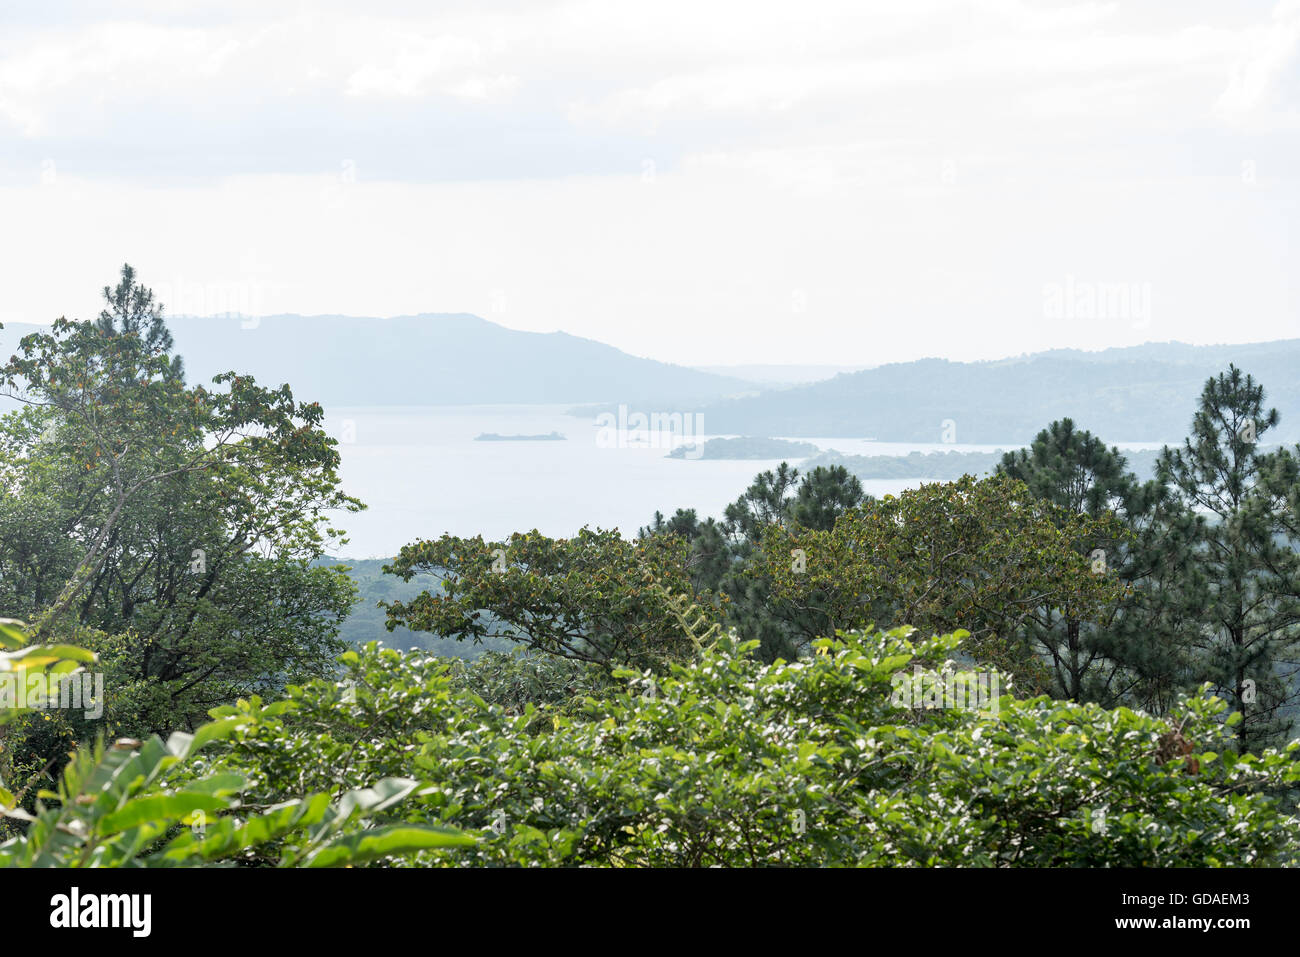 Costa Rica, Alajuela, San Carlos, mit Blick auf den Arenal-See, der in Costa Rica und mit einer Fläche von 80 km ² der größte See des Landes ist Stockfoto